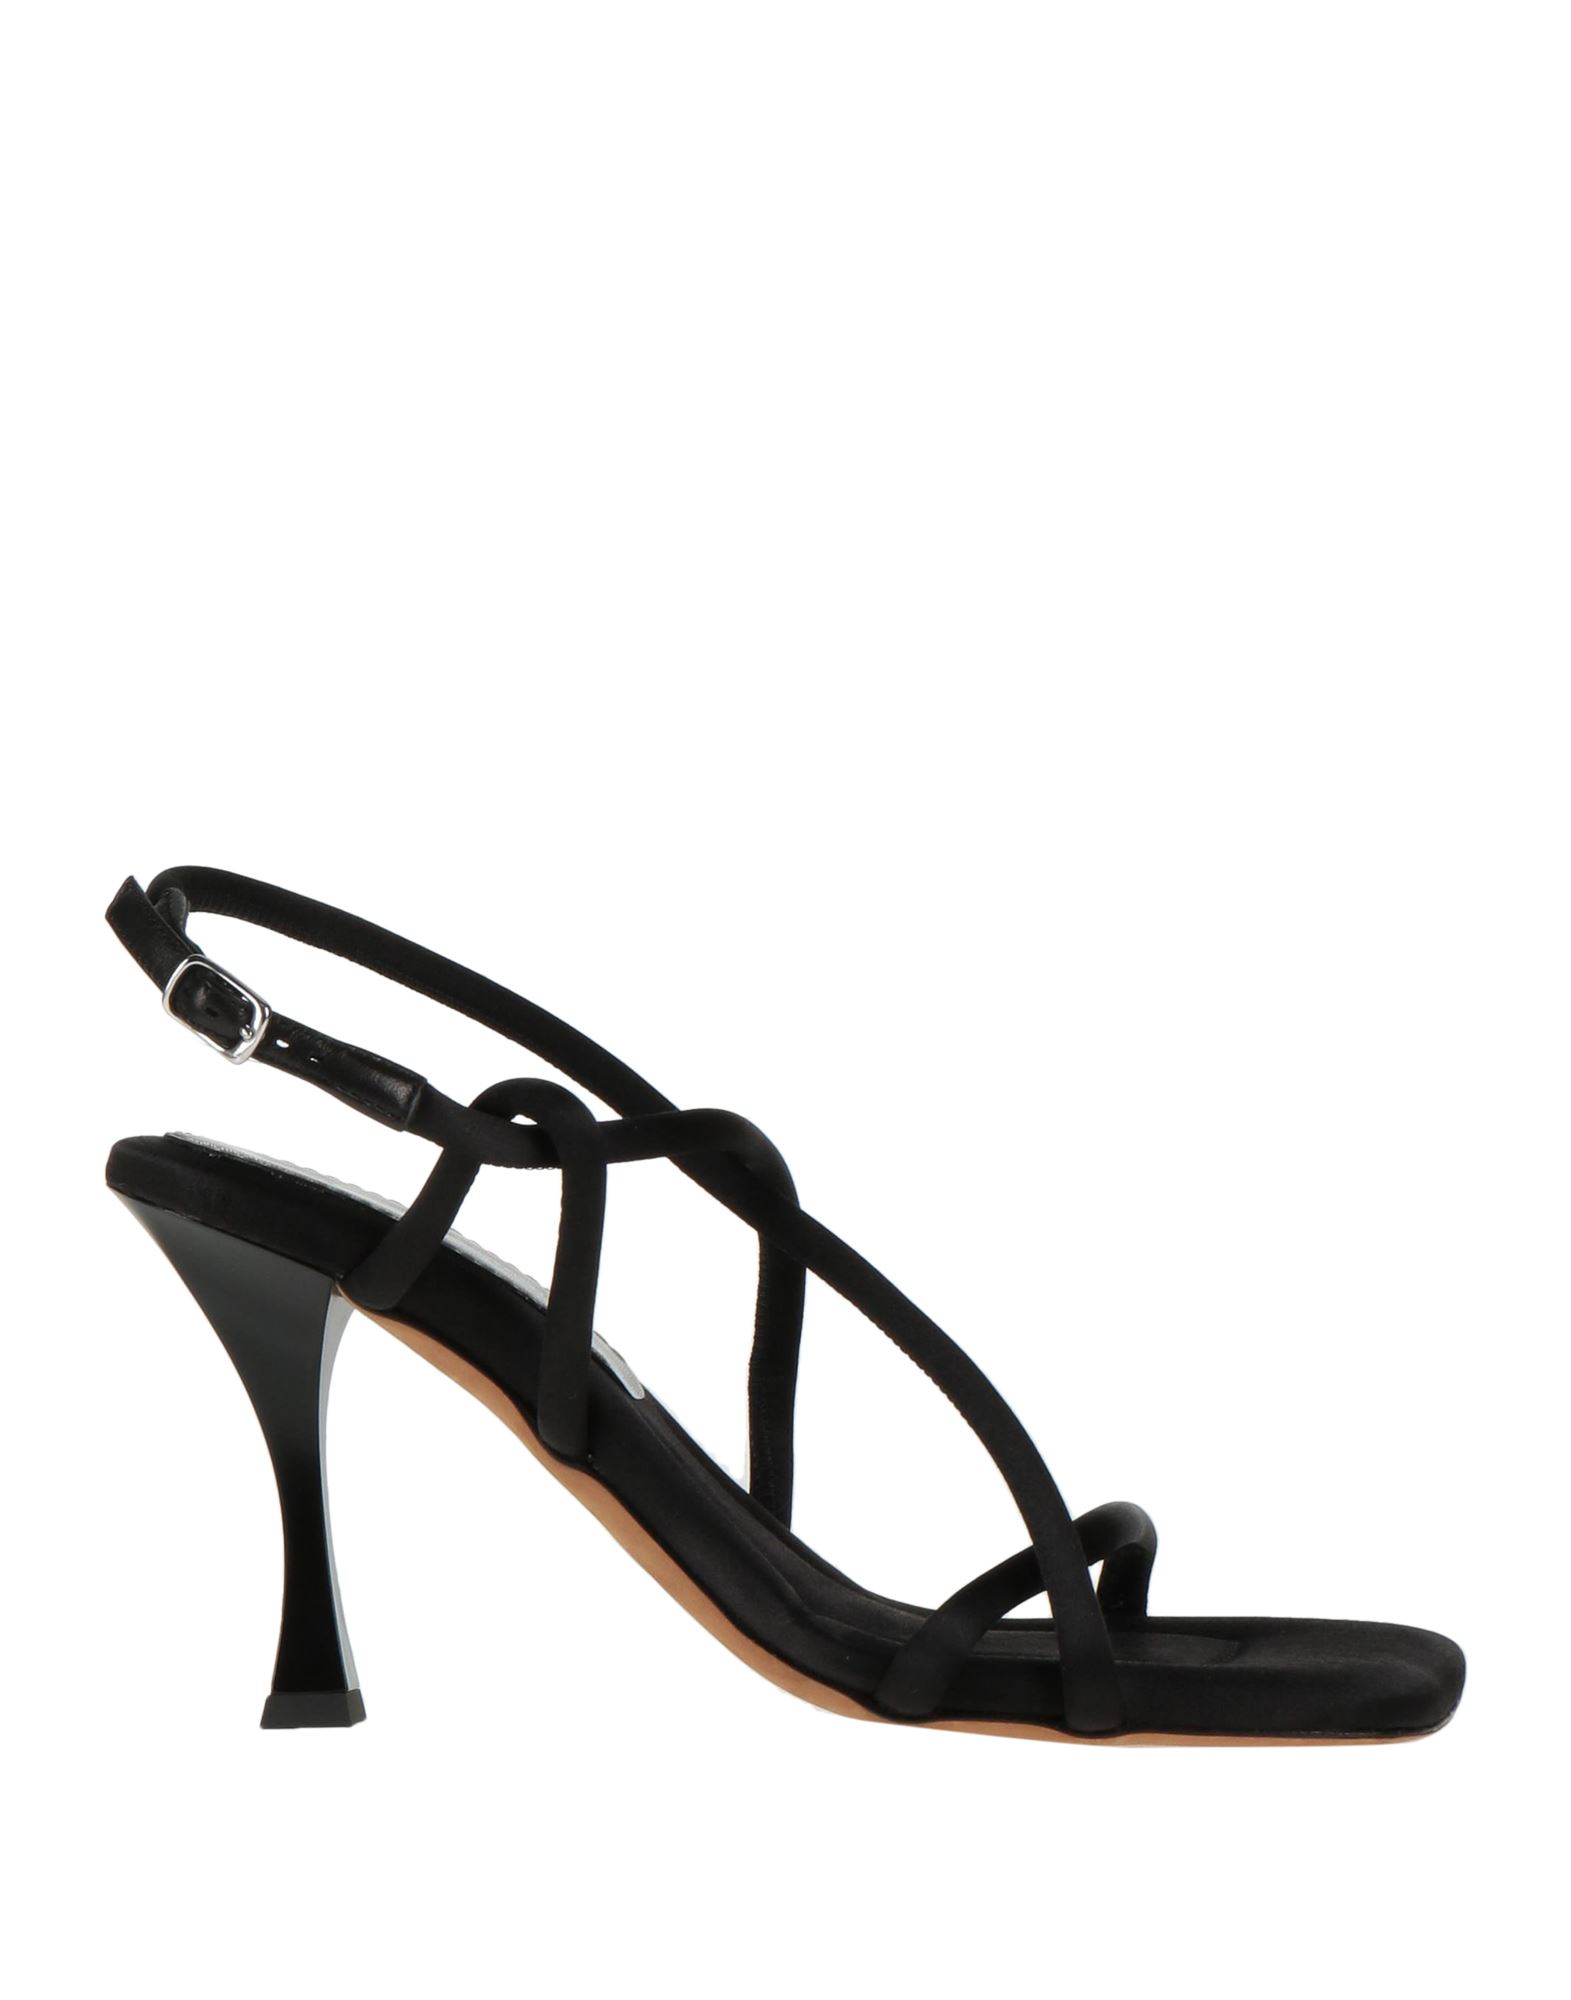 Shop Proenza Schouler Woman Sandals Black Size 8 Textile Fibers